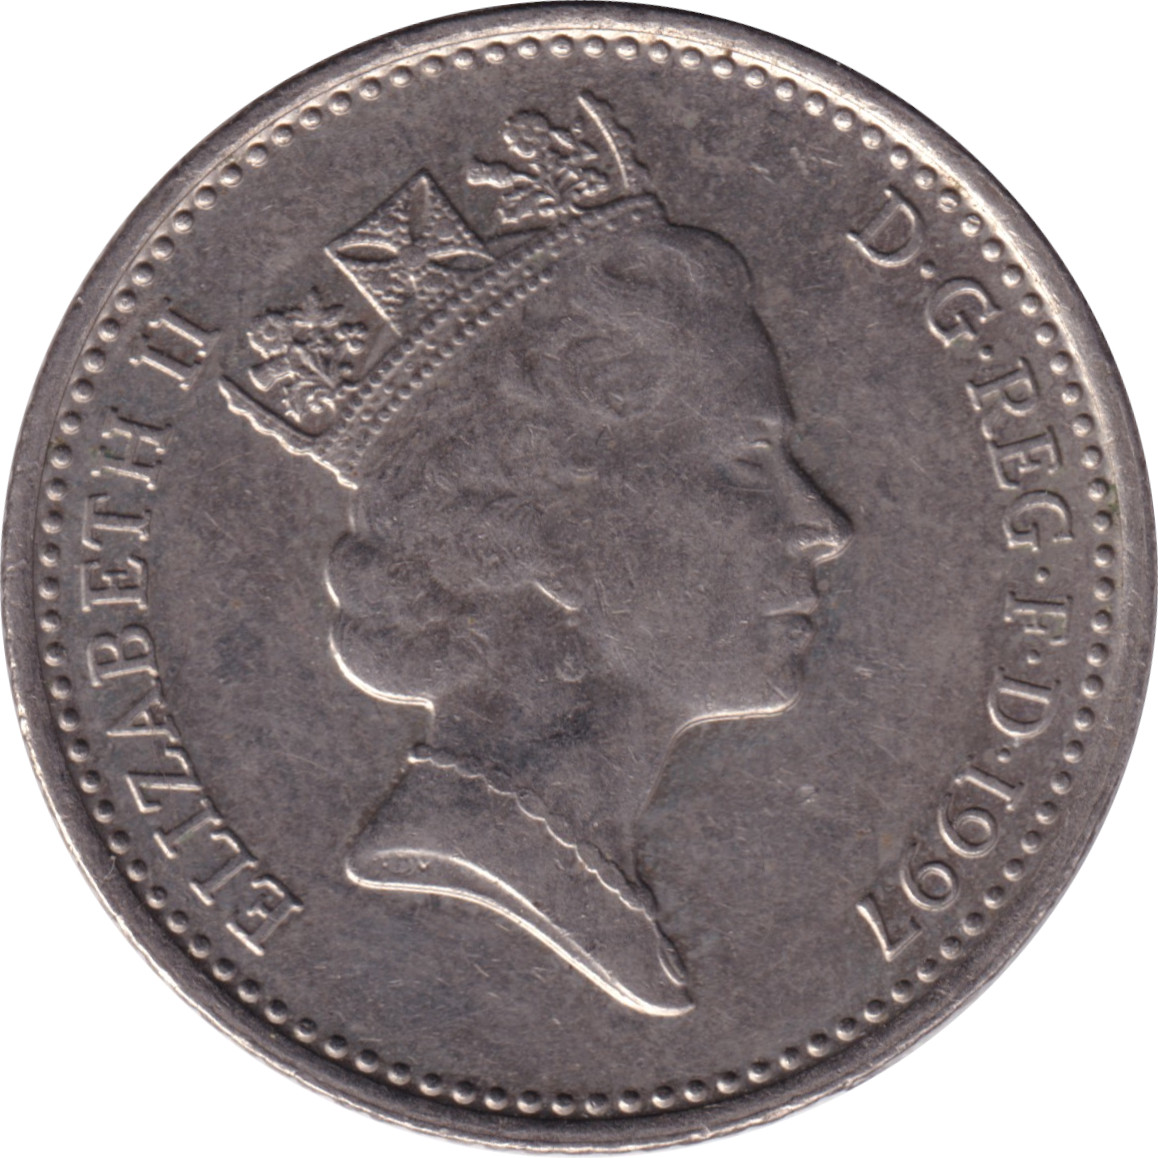 10 pence - Elizabeth II - Tête mature - Petit module